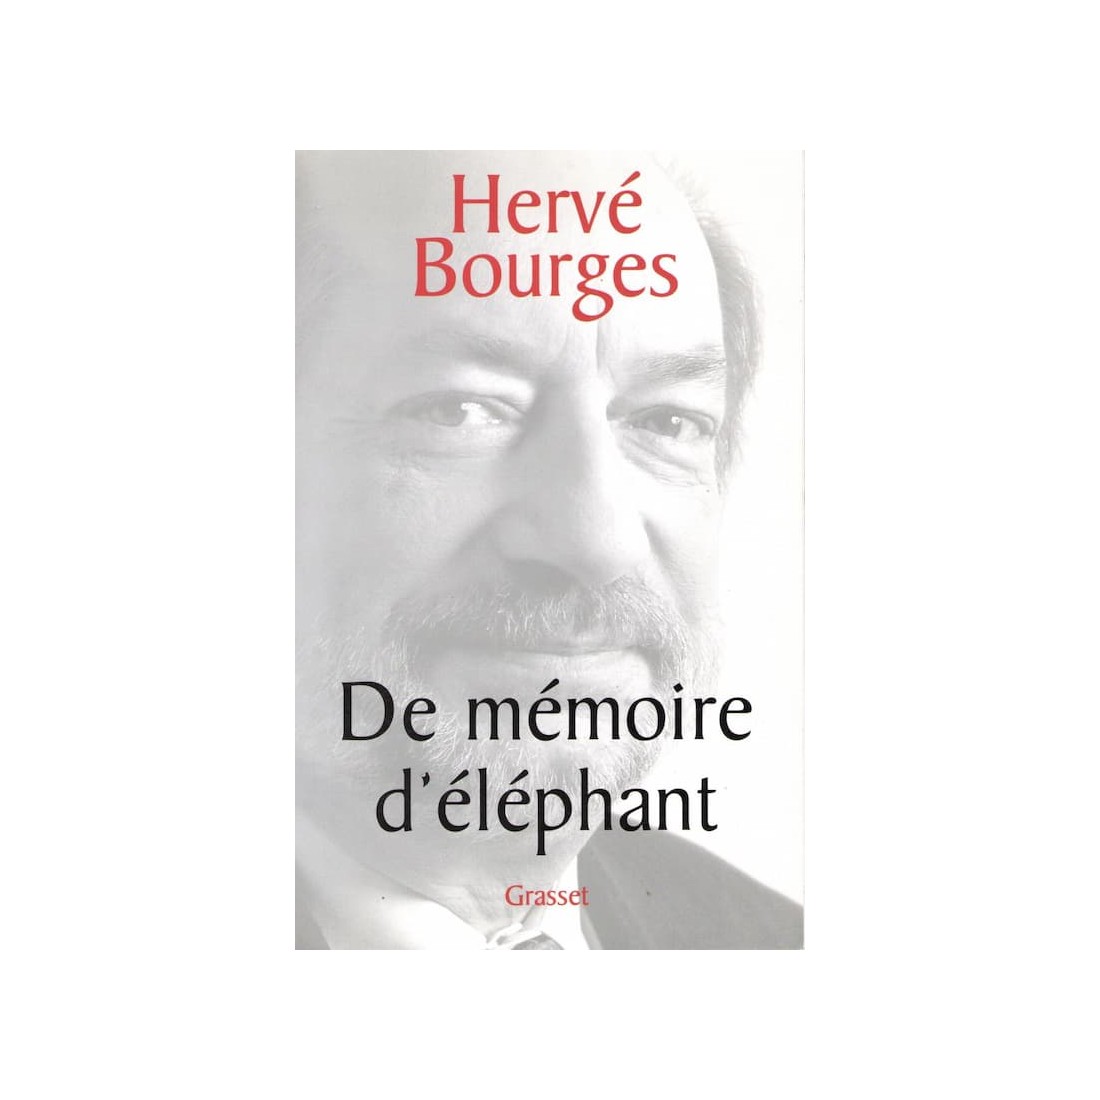 De mémoire d'éléphant - Roman de Hervé Bourges - Ocazlivres.com